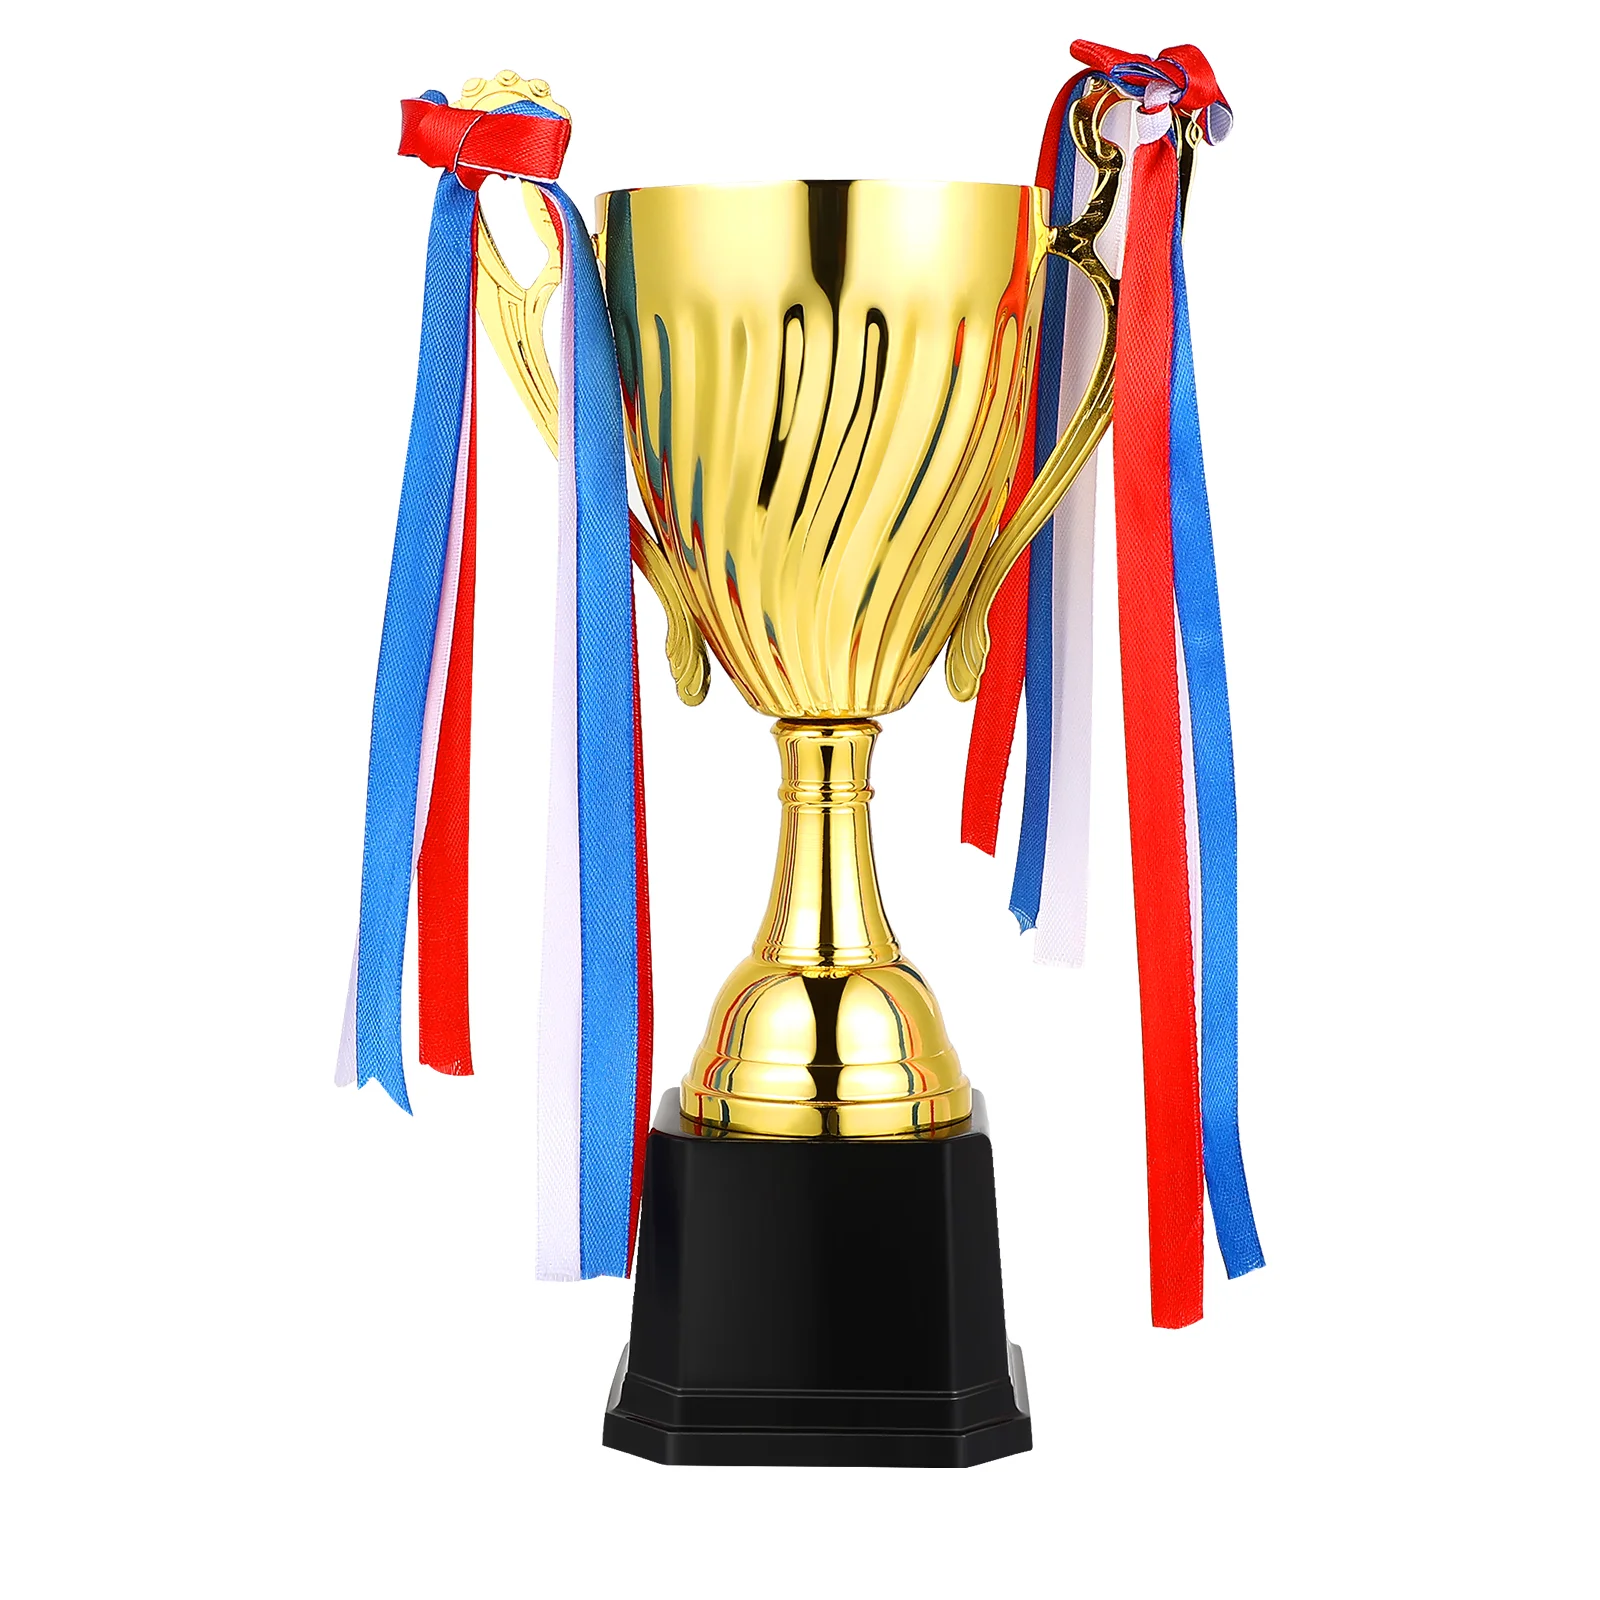 

Футбольный Трофей для детей, классический золотой цвет, земляные оттенки, спортивные соревнования, Кубок награды, честь для ребенка